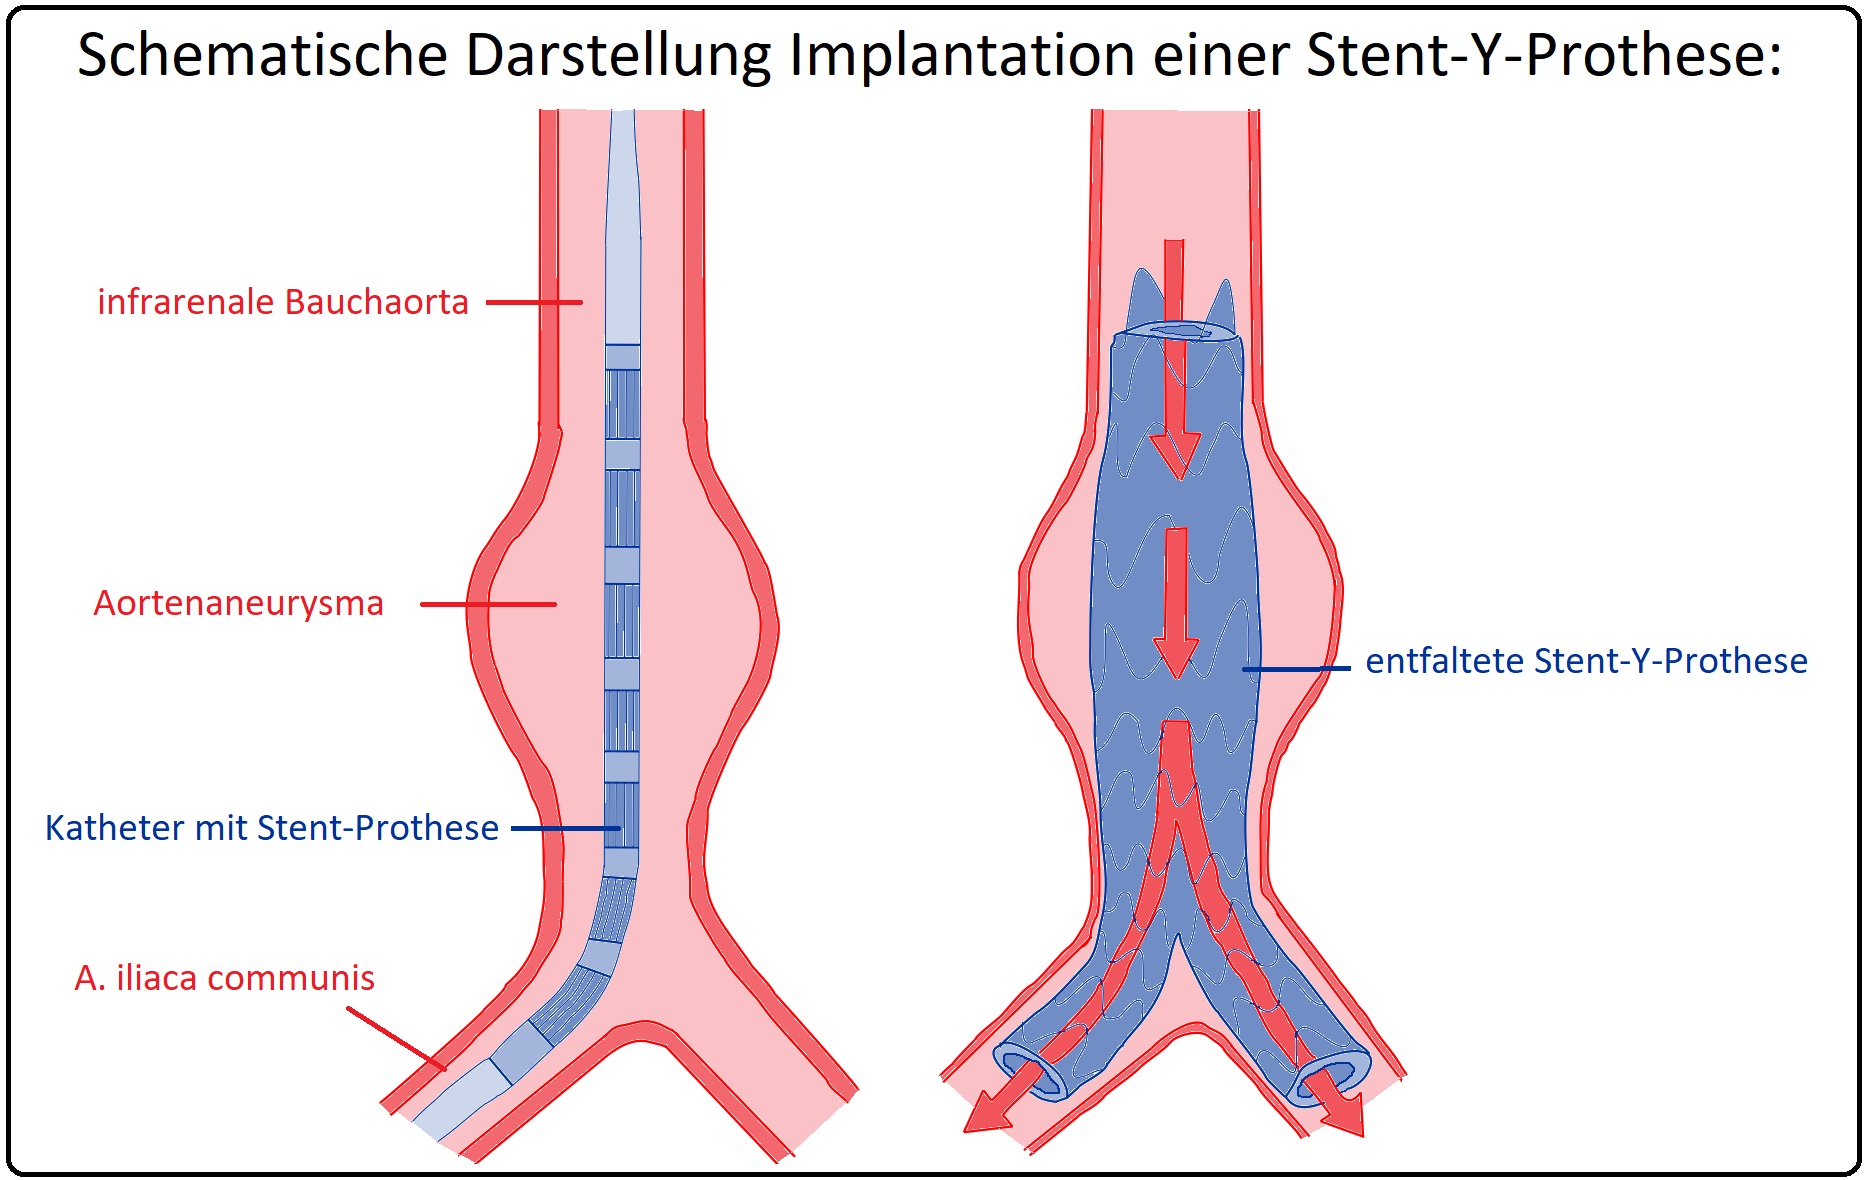 645 Schematische Darstellung der Implantation einer Stent Y Prothese